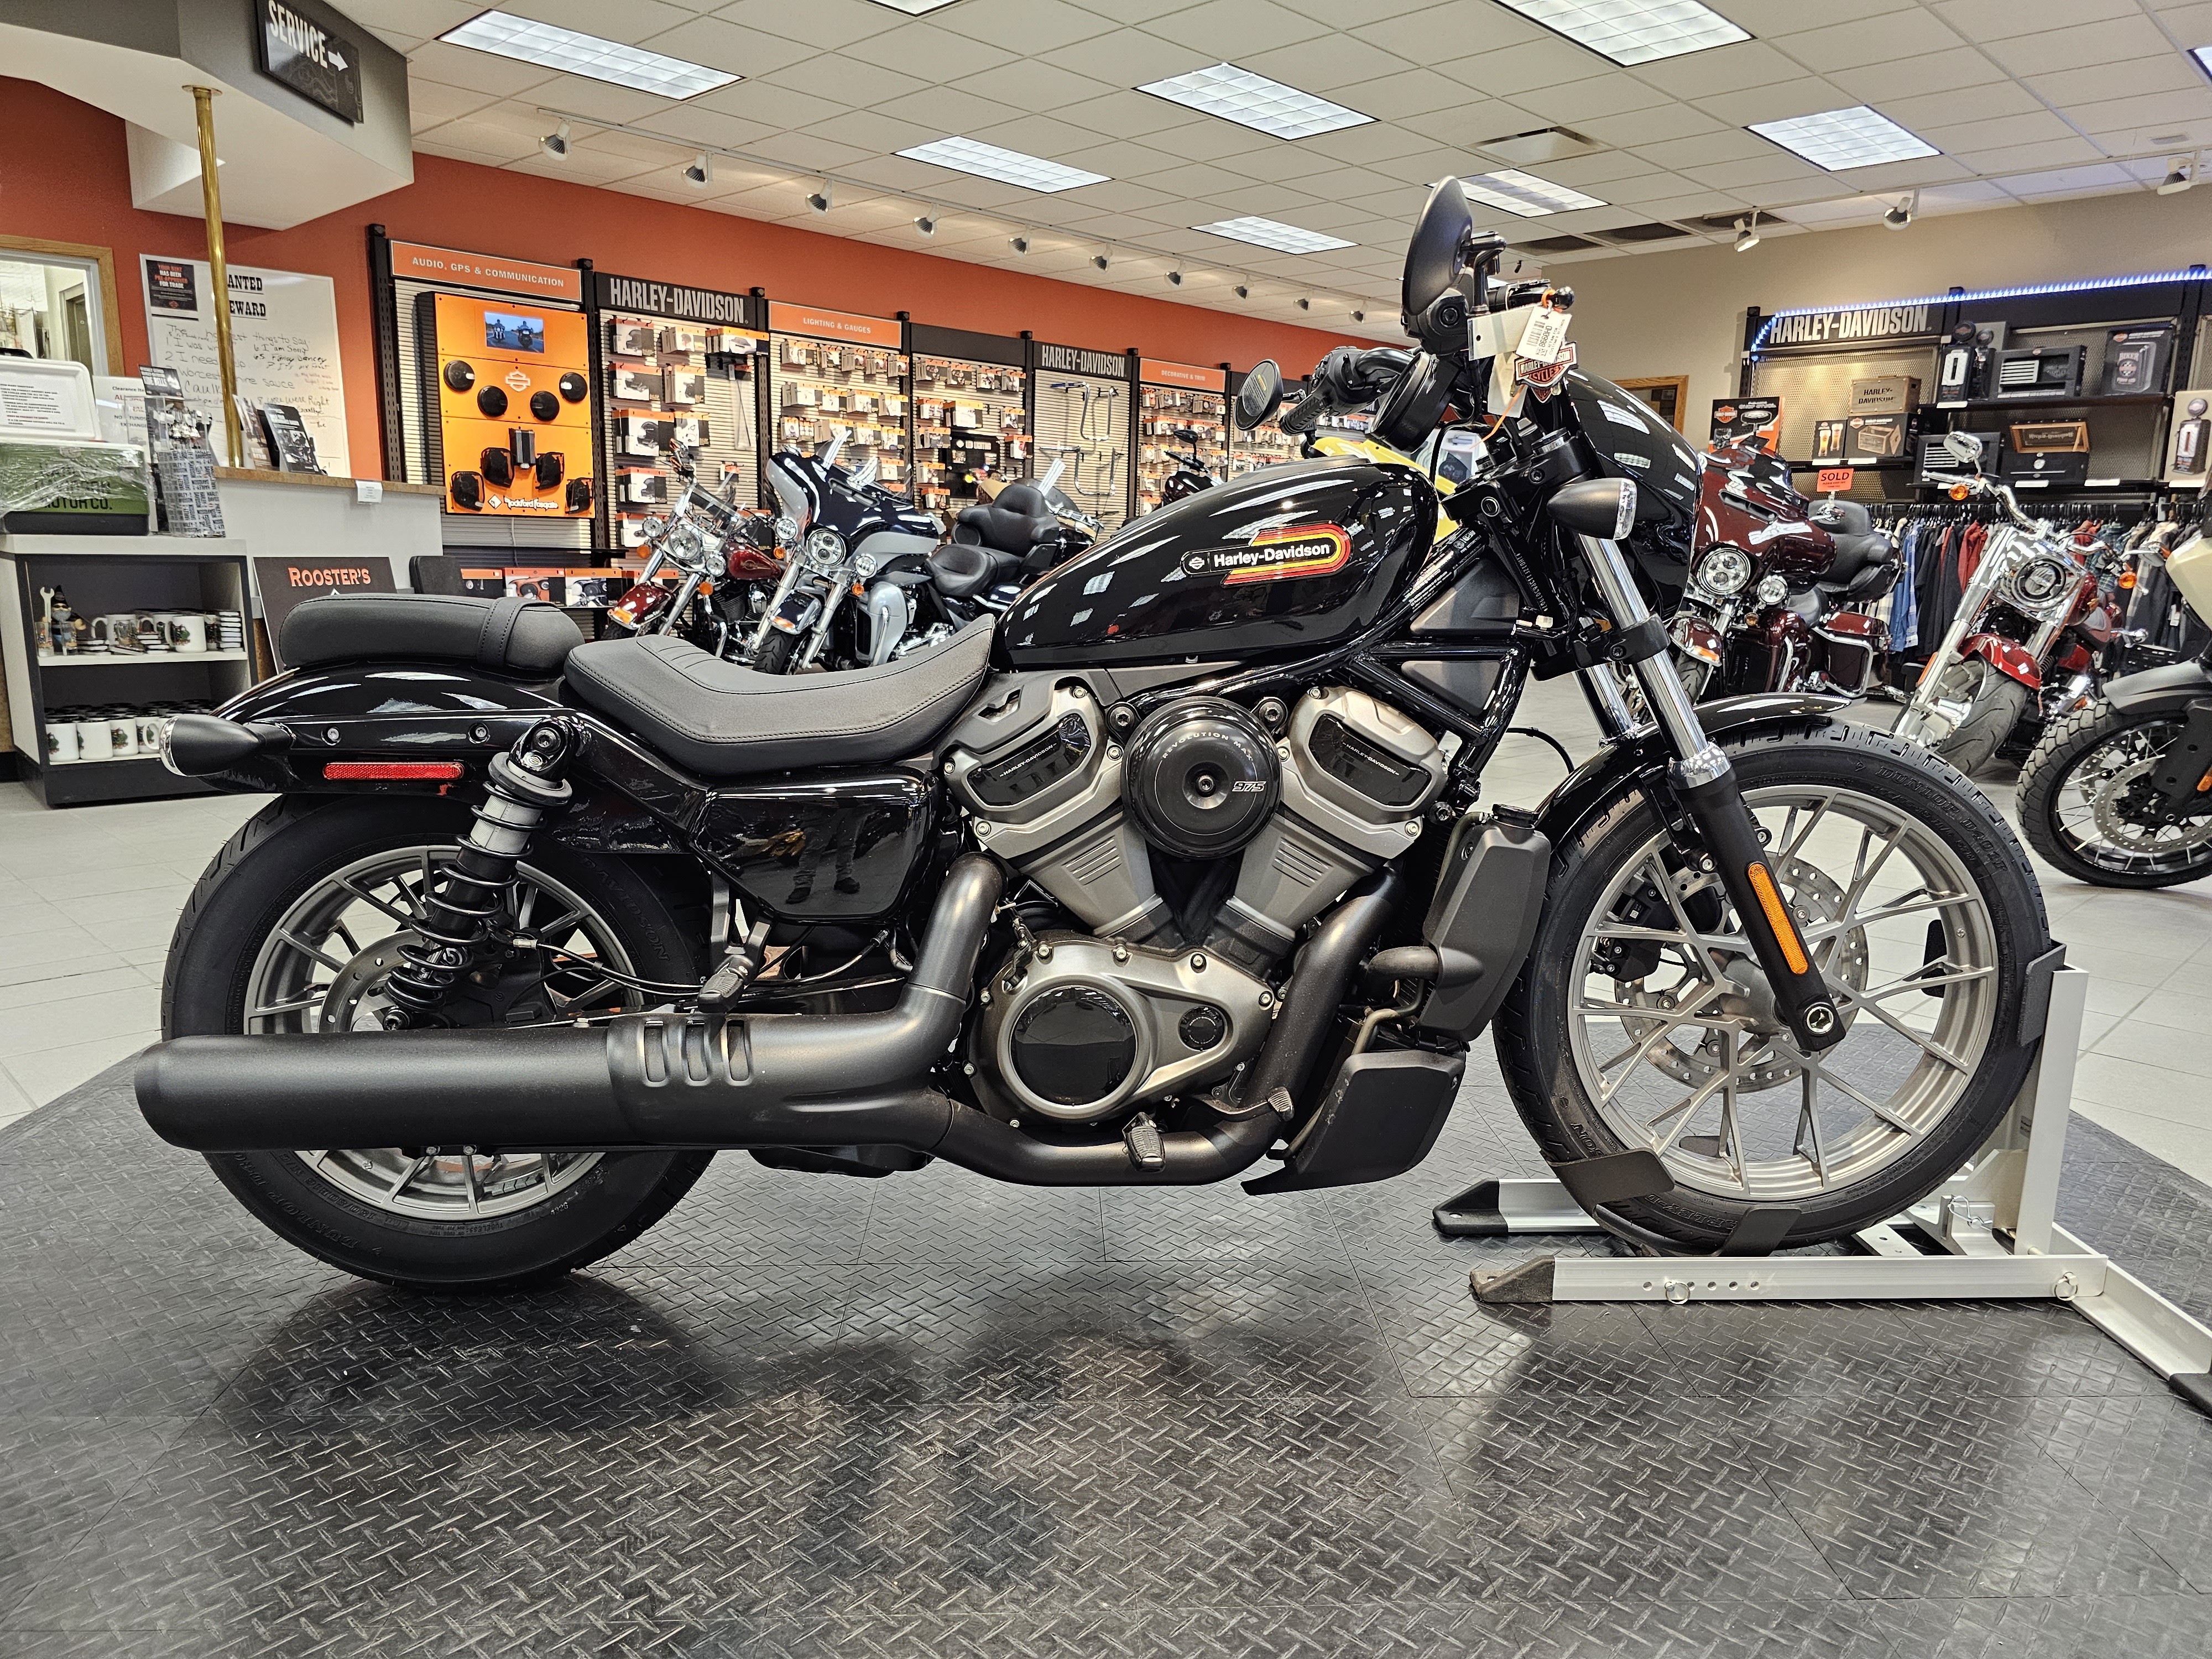 2023 Harley-Davidson Sportster Nightster Special at Rooster's Harley Davidson